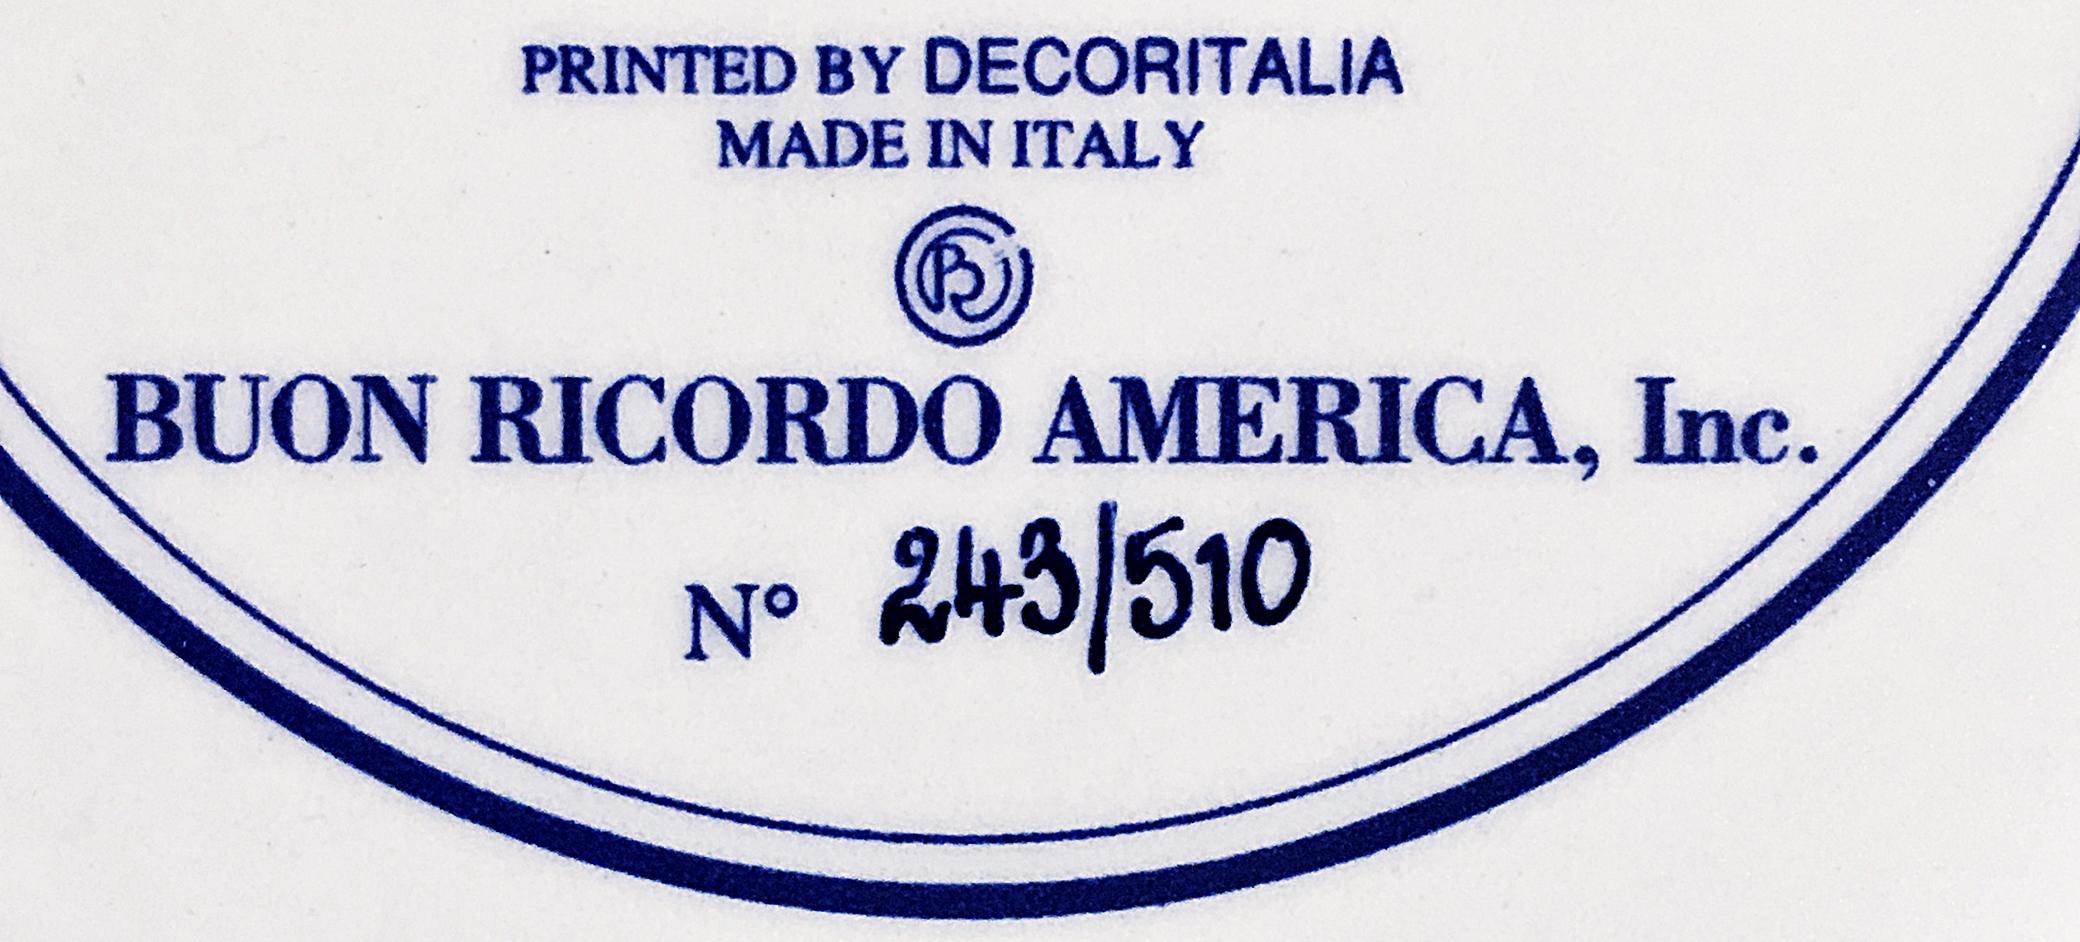 Cacciucco - Coco Pazzo - New York, NY For Sale 2